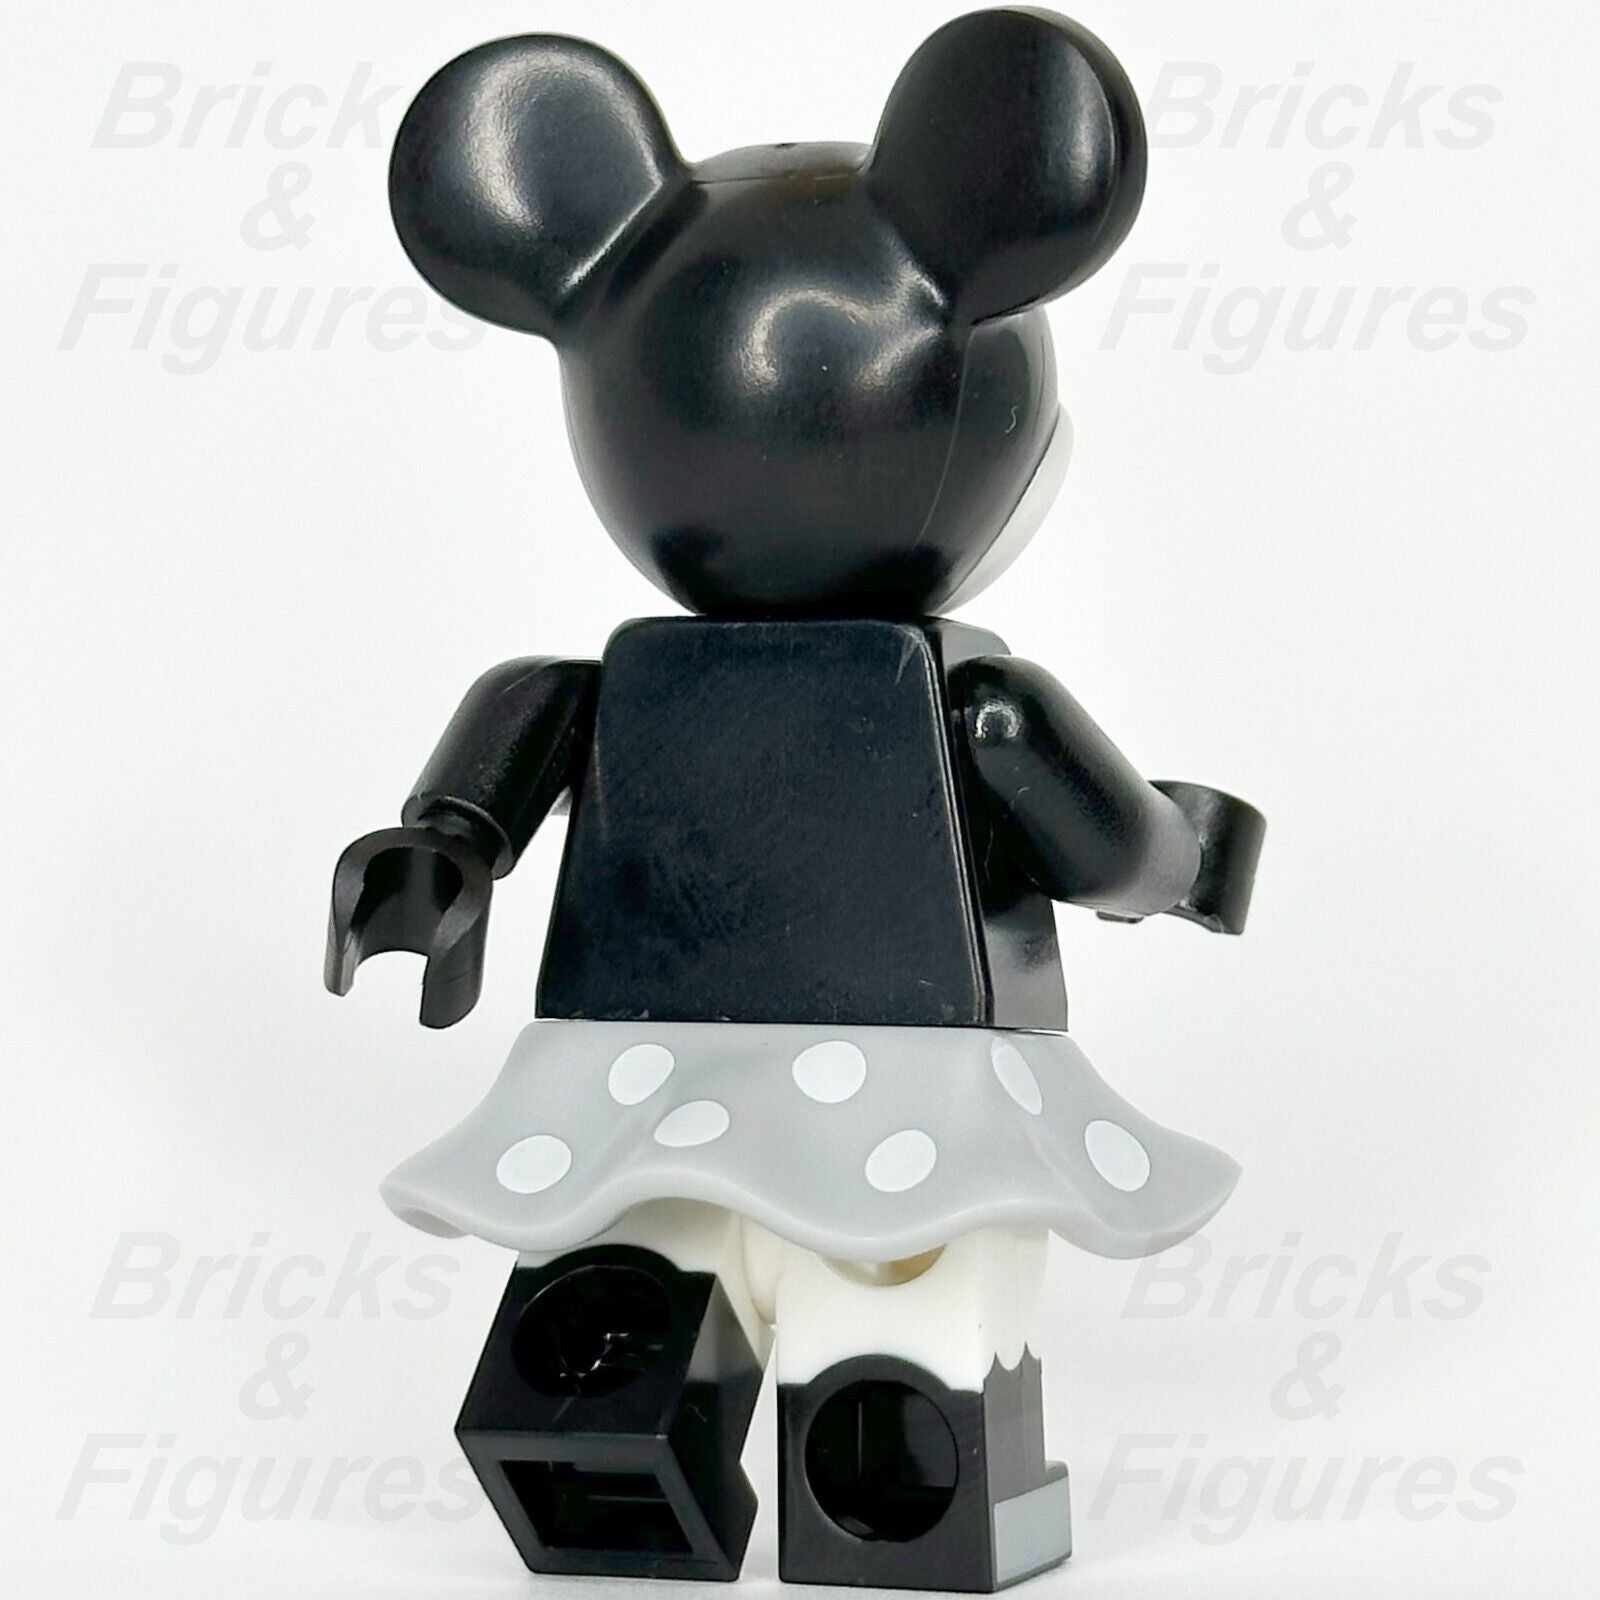 LEGO Disney Minnie Mouse Minifigure Vintage Black & White Classic 43230 dis142